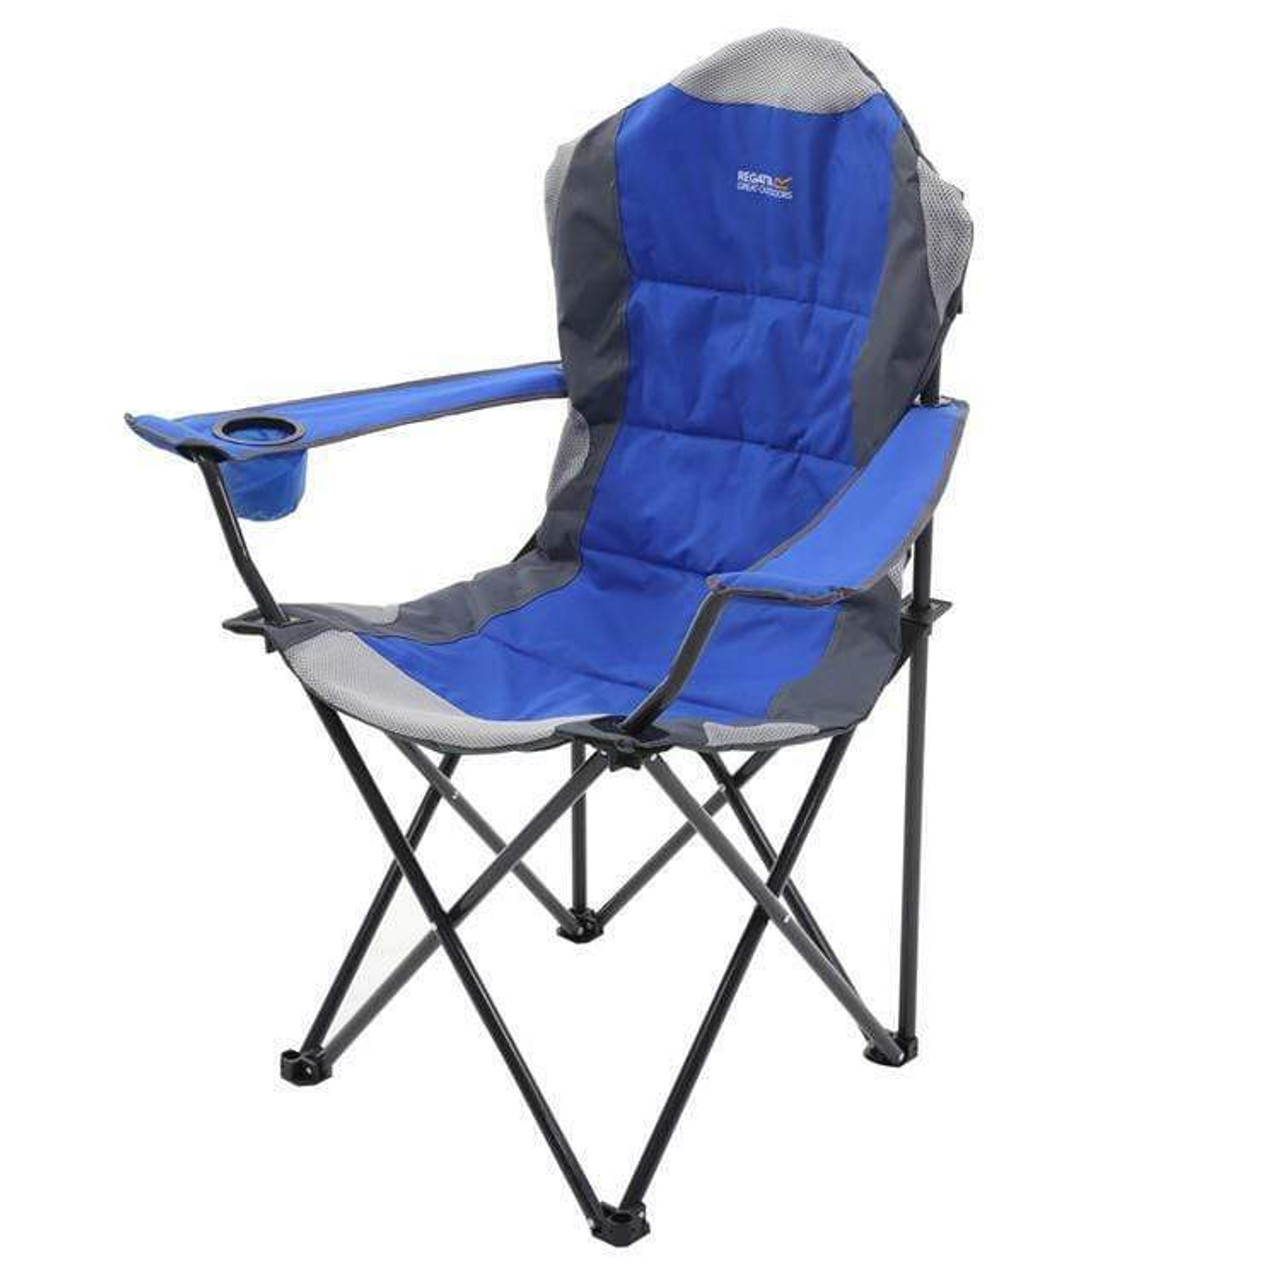 Vriendelijkheid ik ben slaperig Nauwkeurig Kruza gewatteerde opvouwbare campingstoel - nautisch blauw